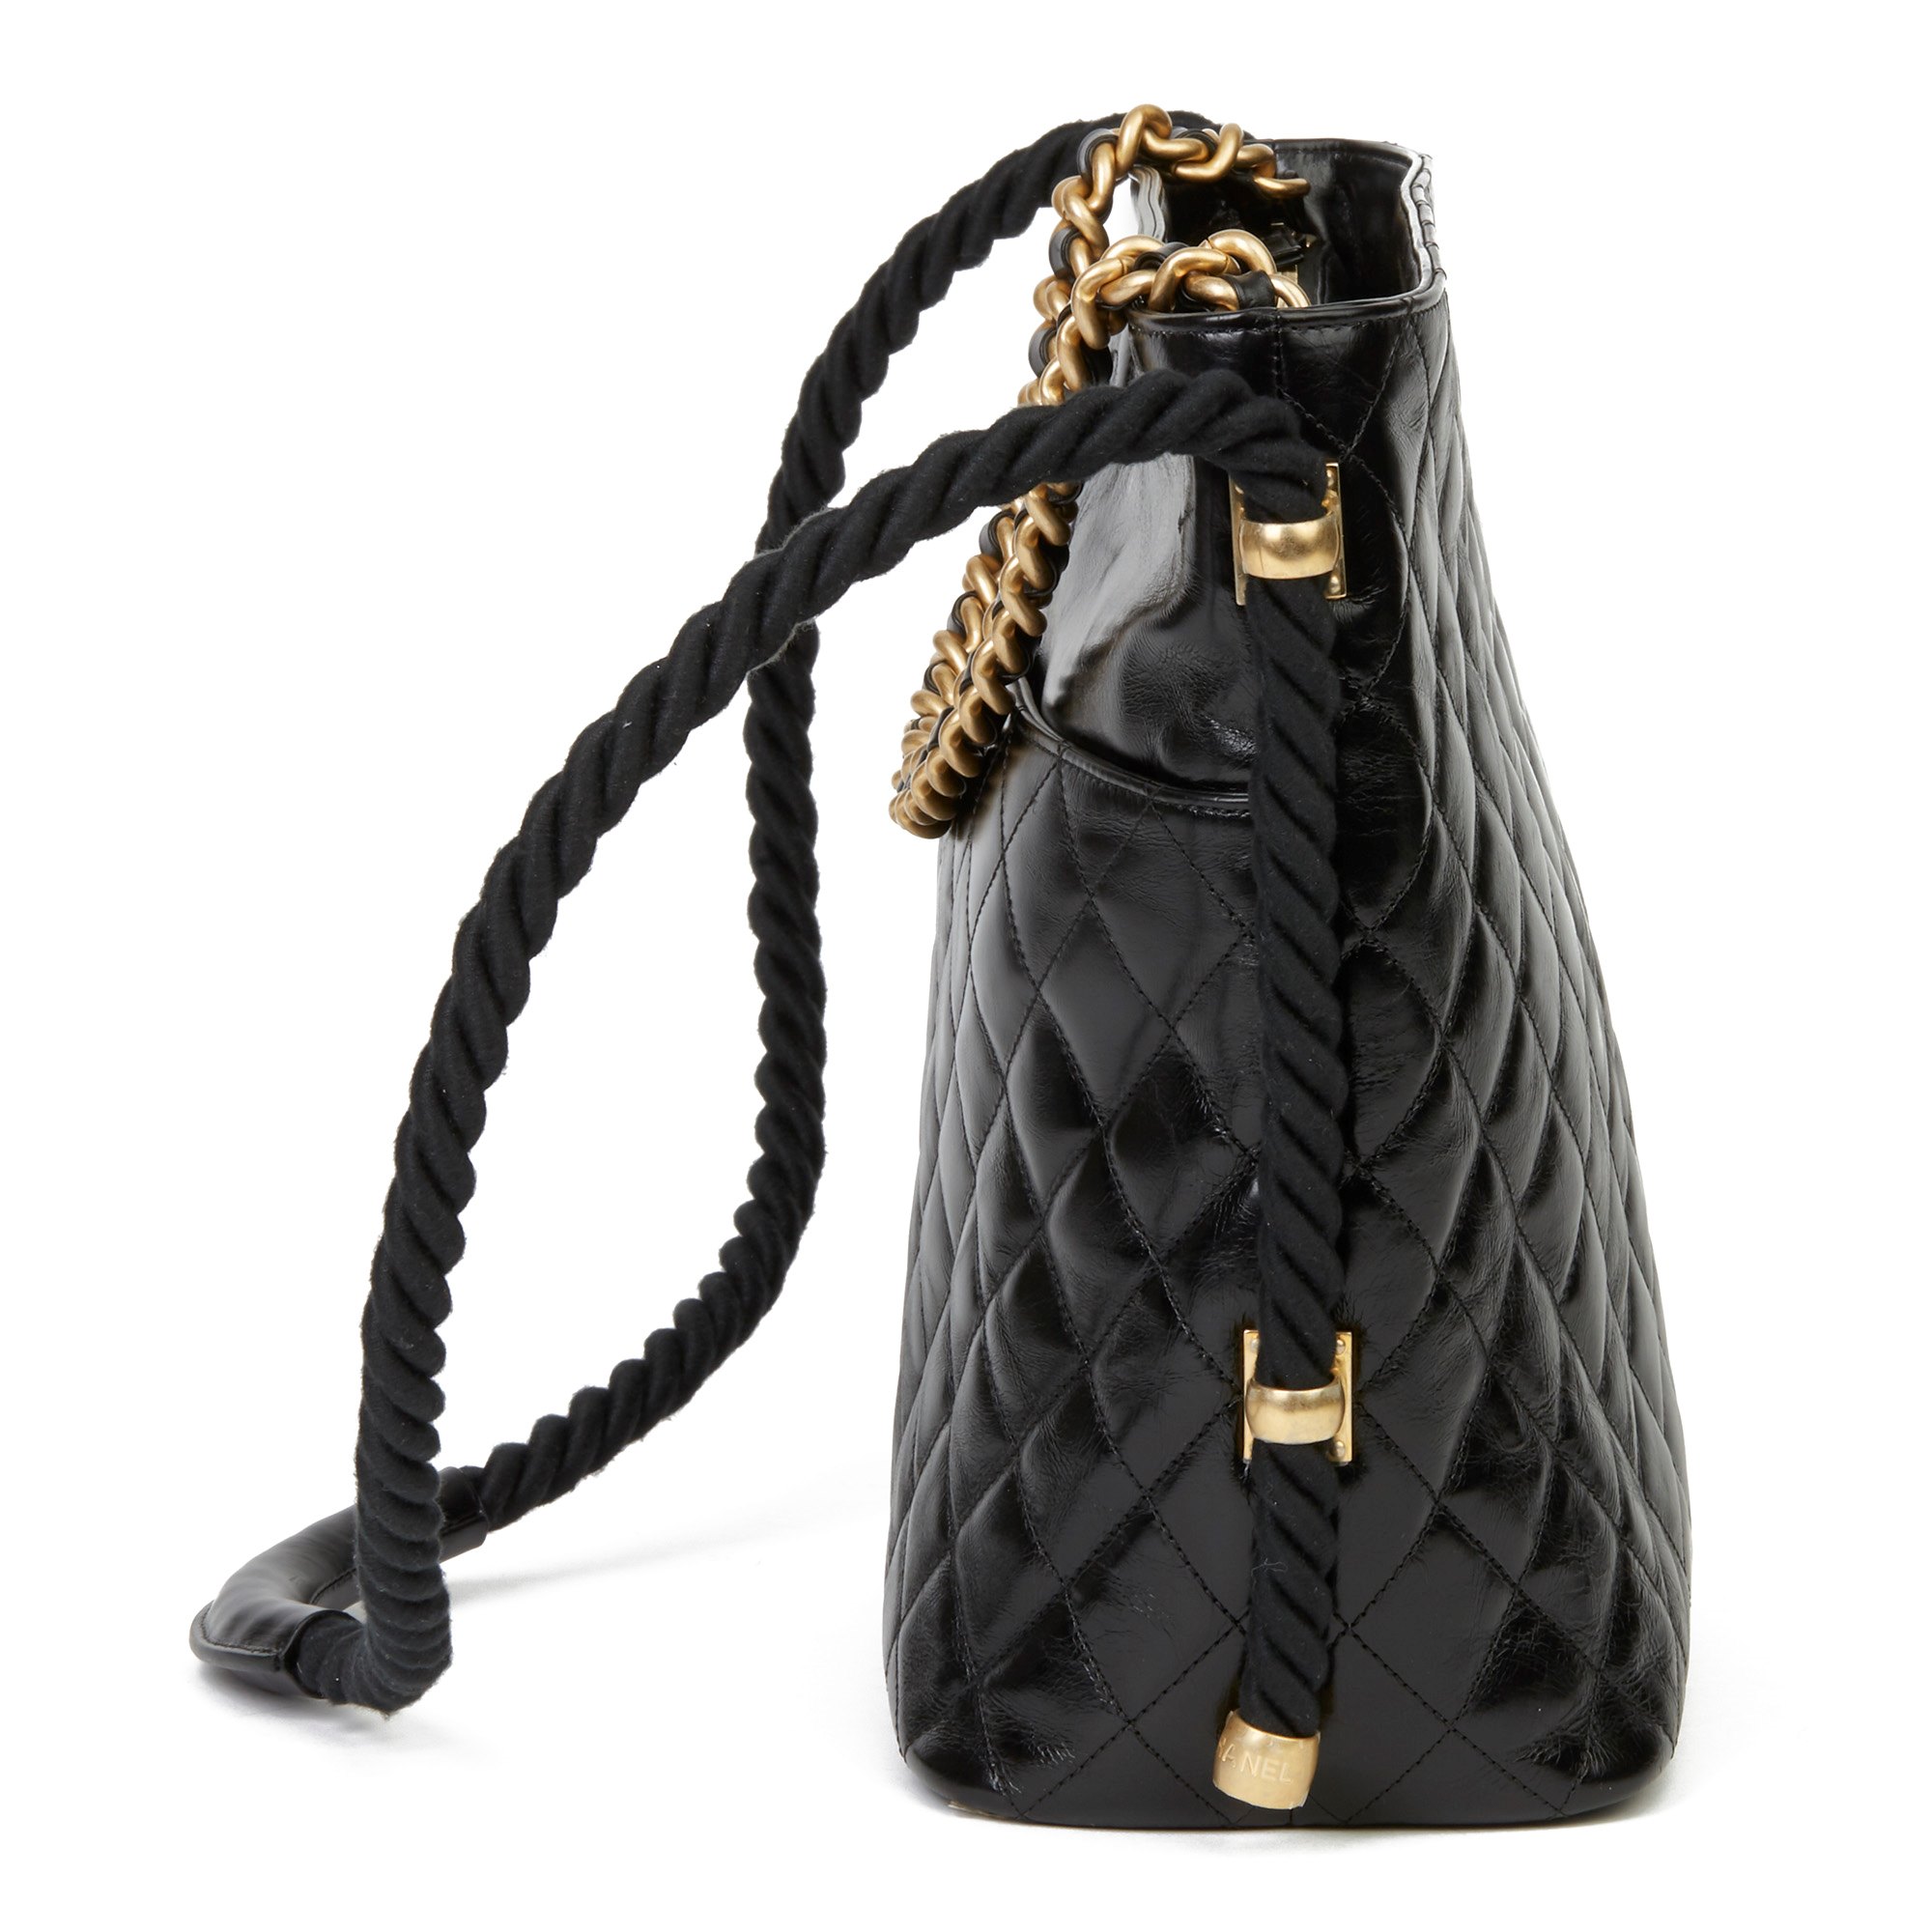 Chanel Black Quilted Aged Calfskin Leather En Vogue Hobo Bag